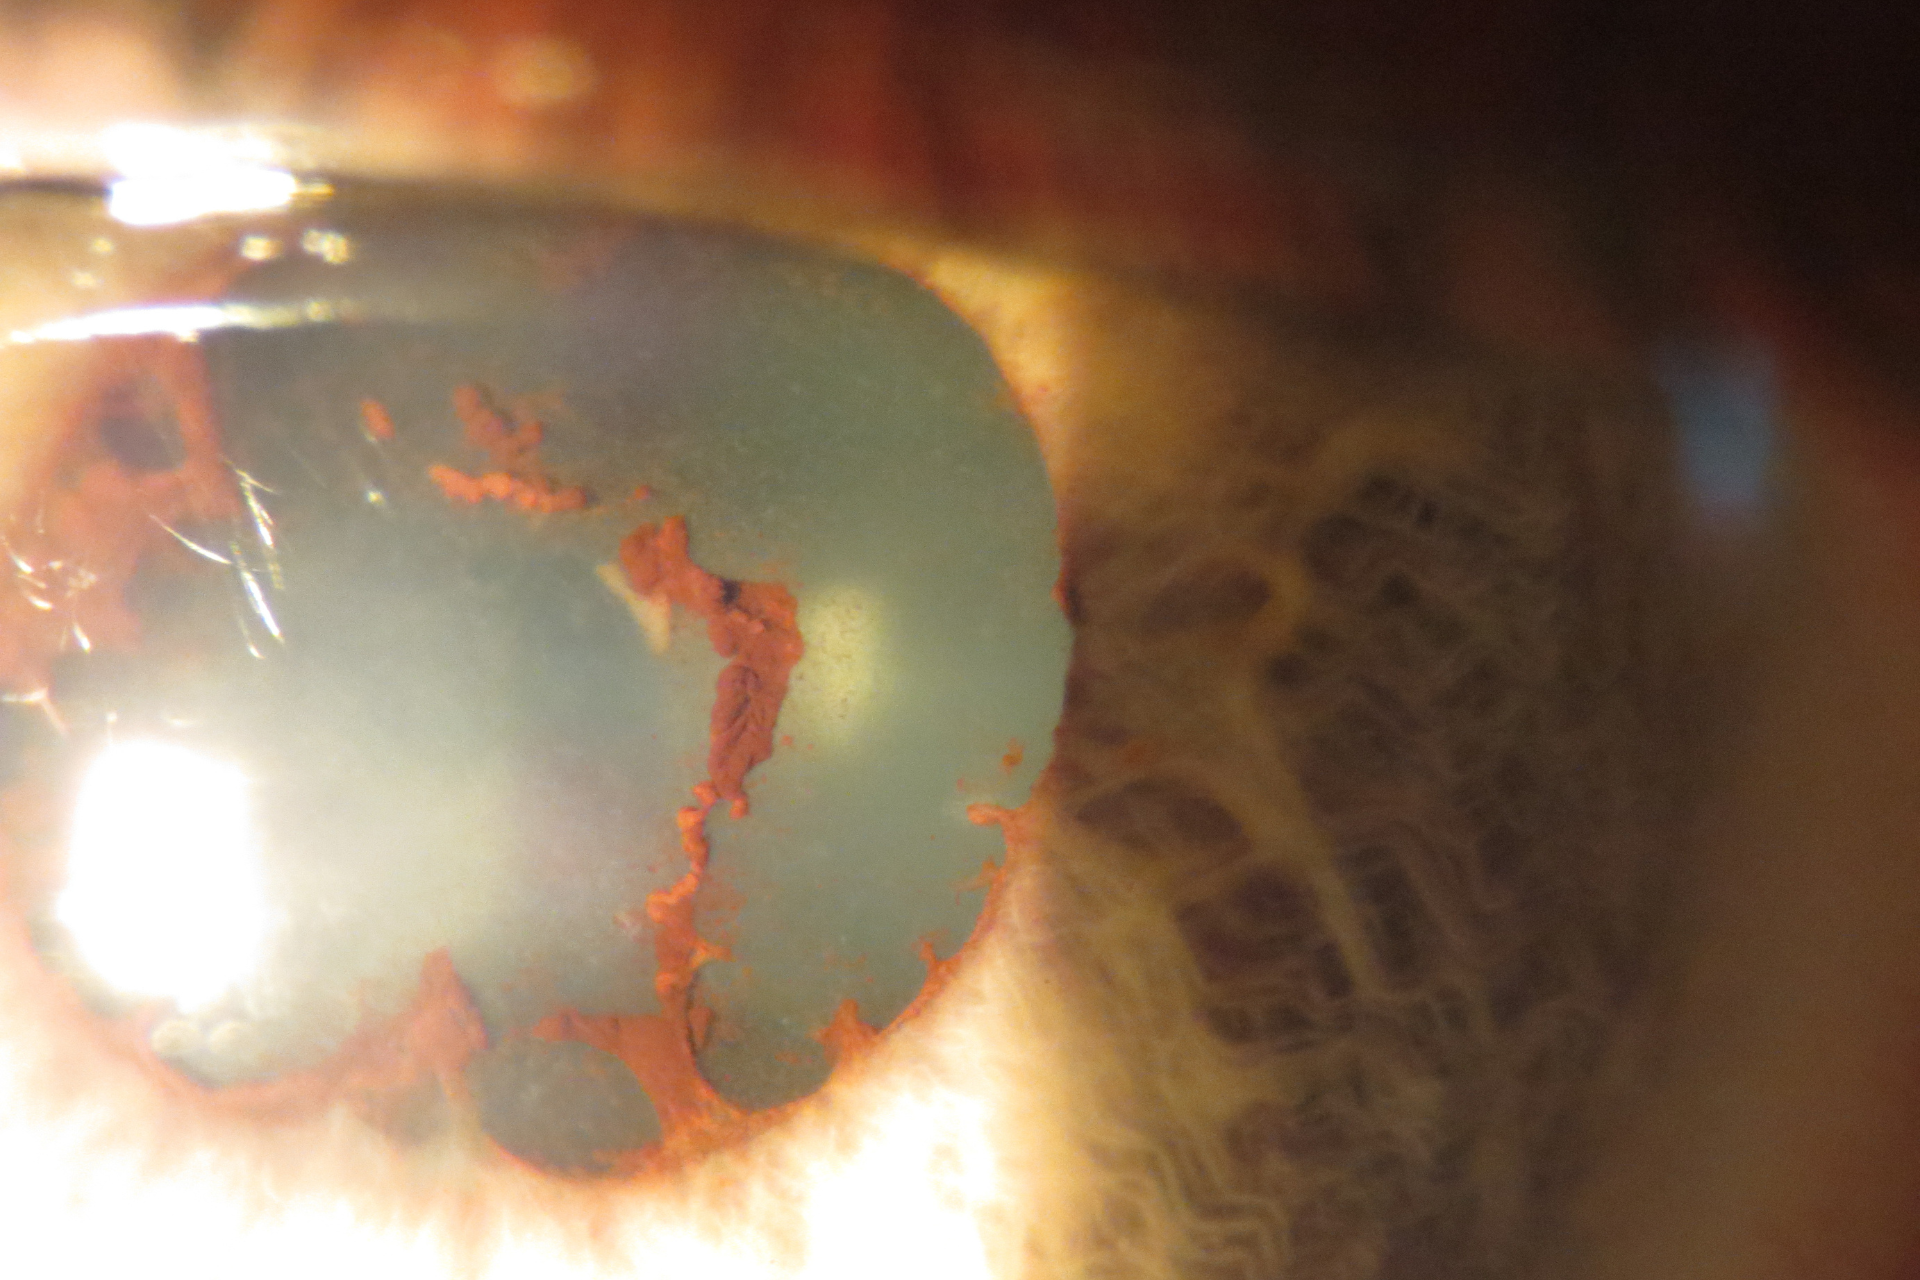 posterior synechiae eye damage anterior uveitis